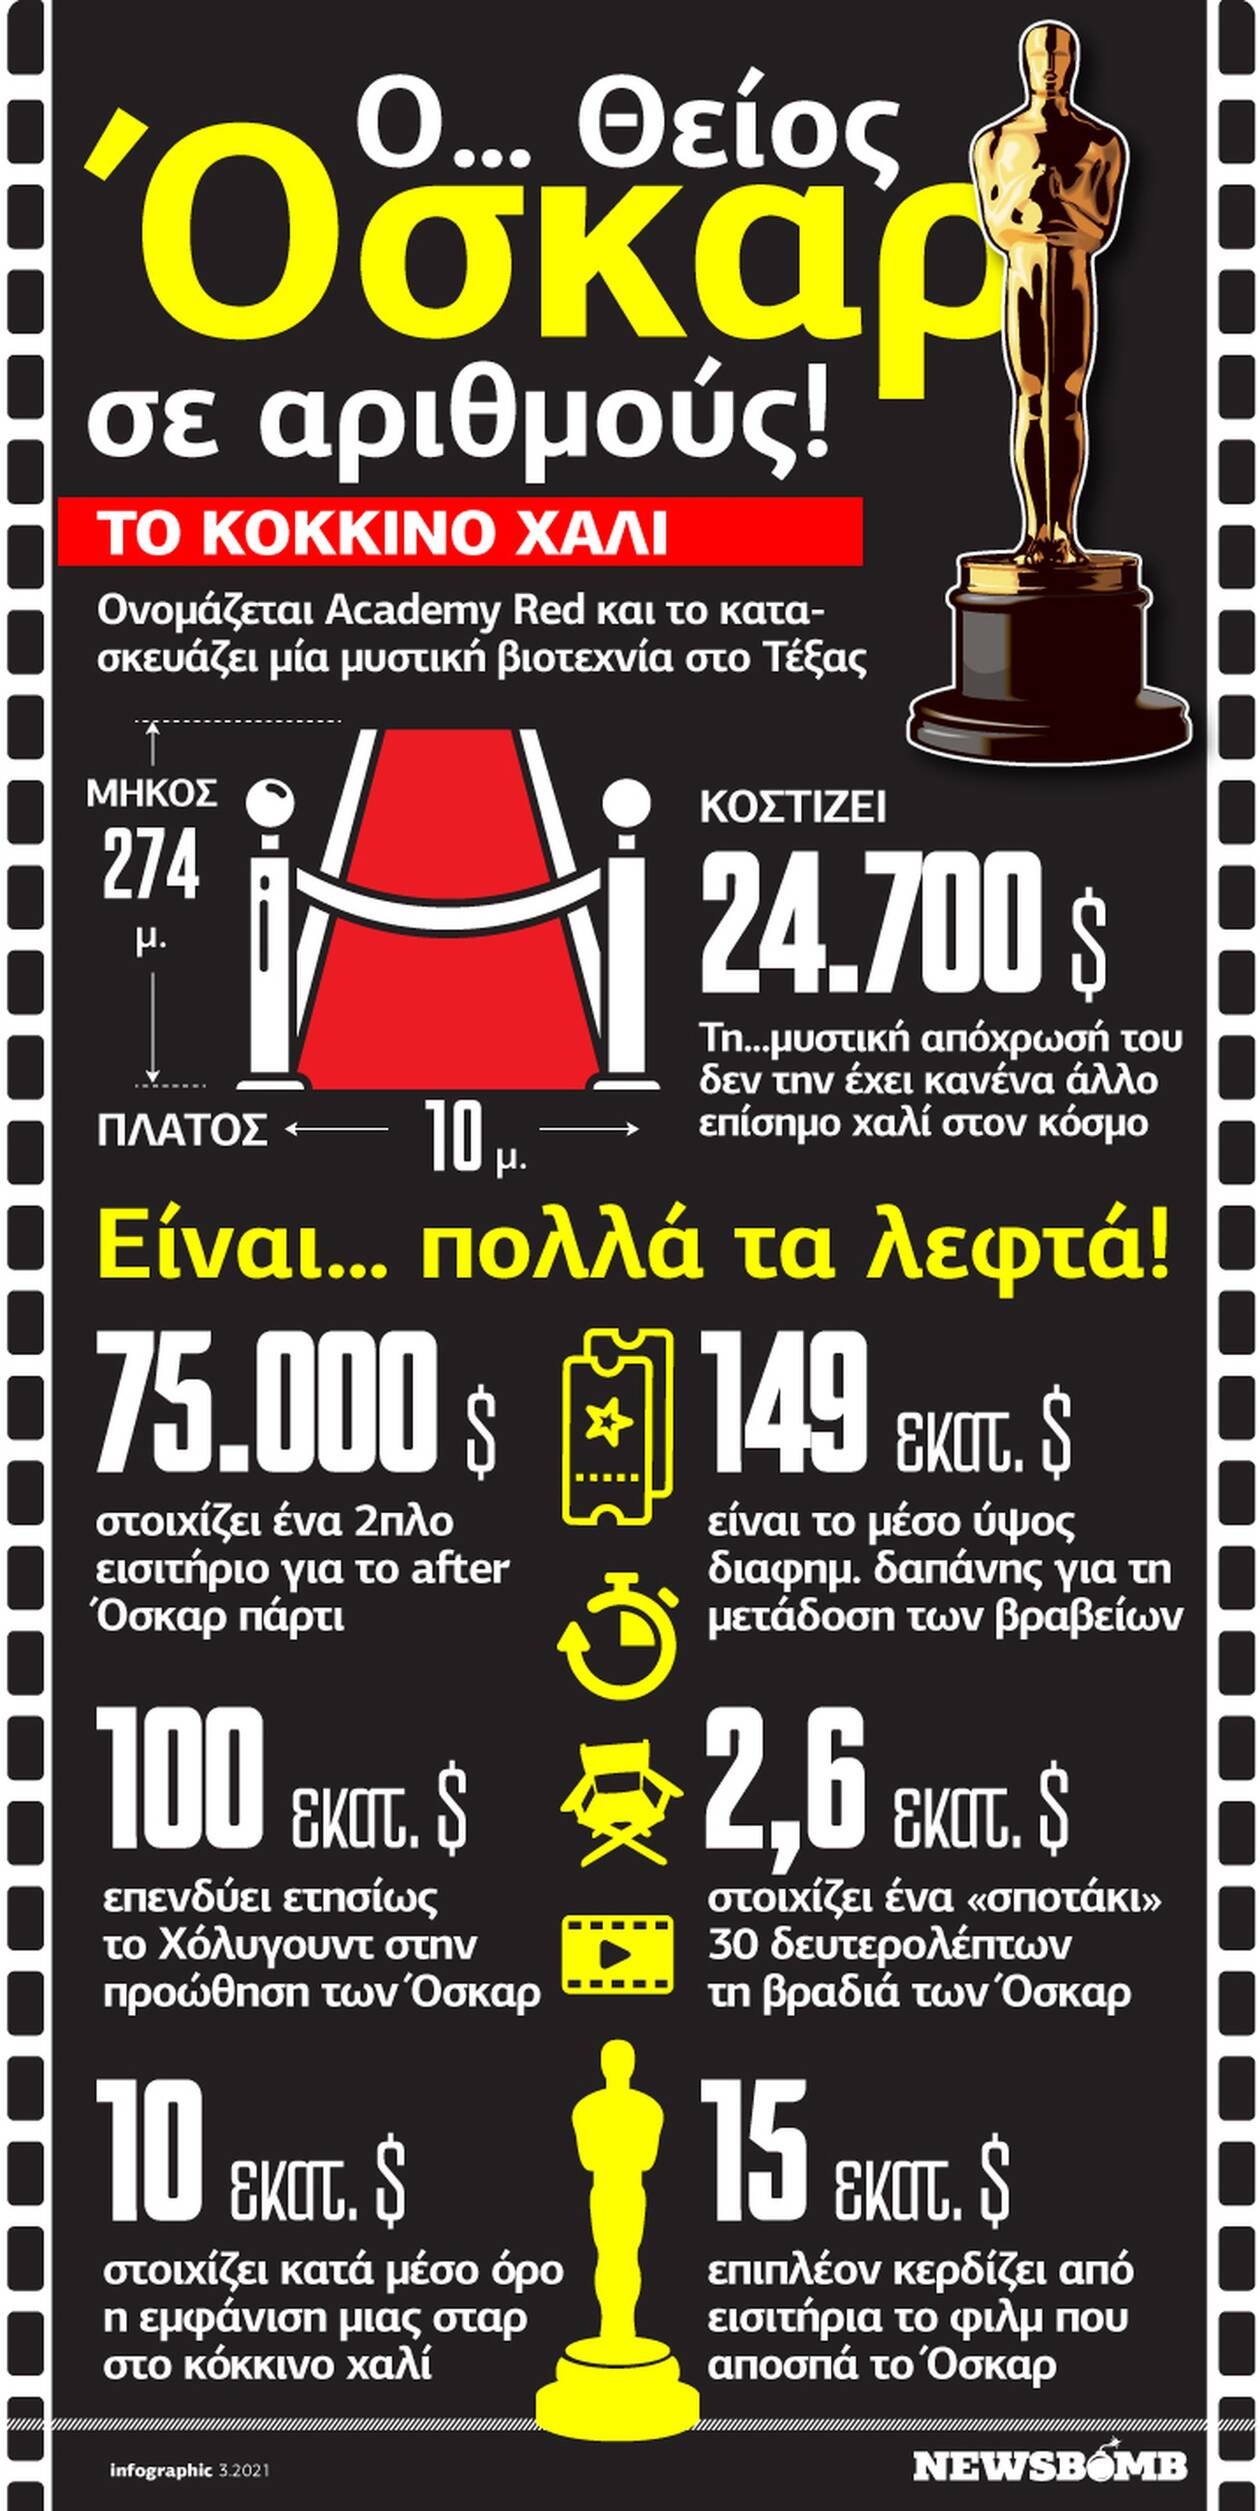 Όσκαρ 2021: Είναι...πολλά τα λεφτά και το infographic του Νewsbomb.gr το αποδεικνύει!